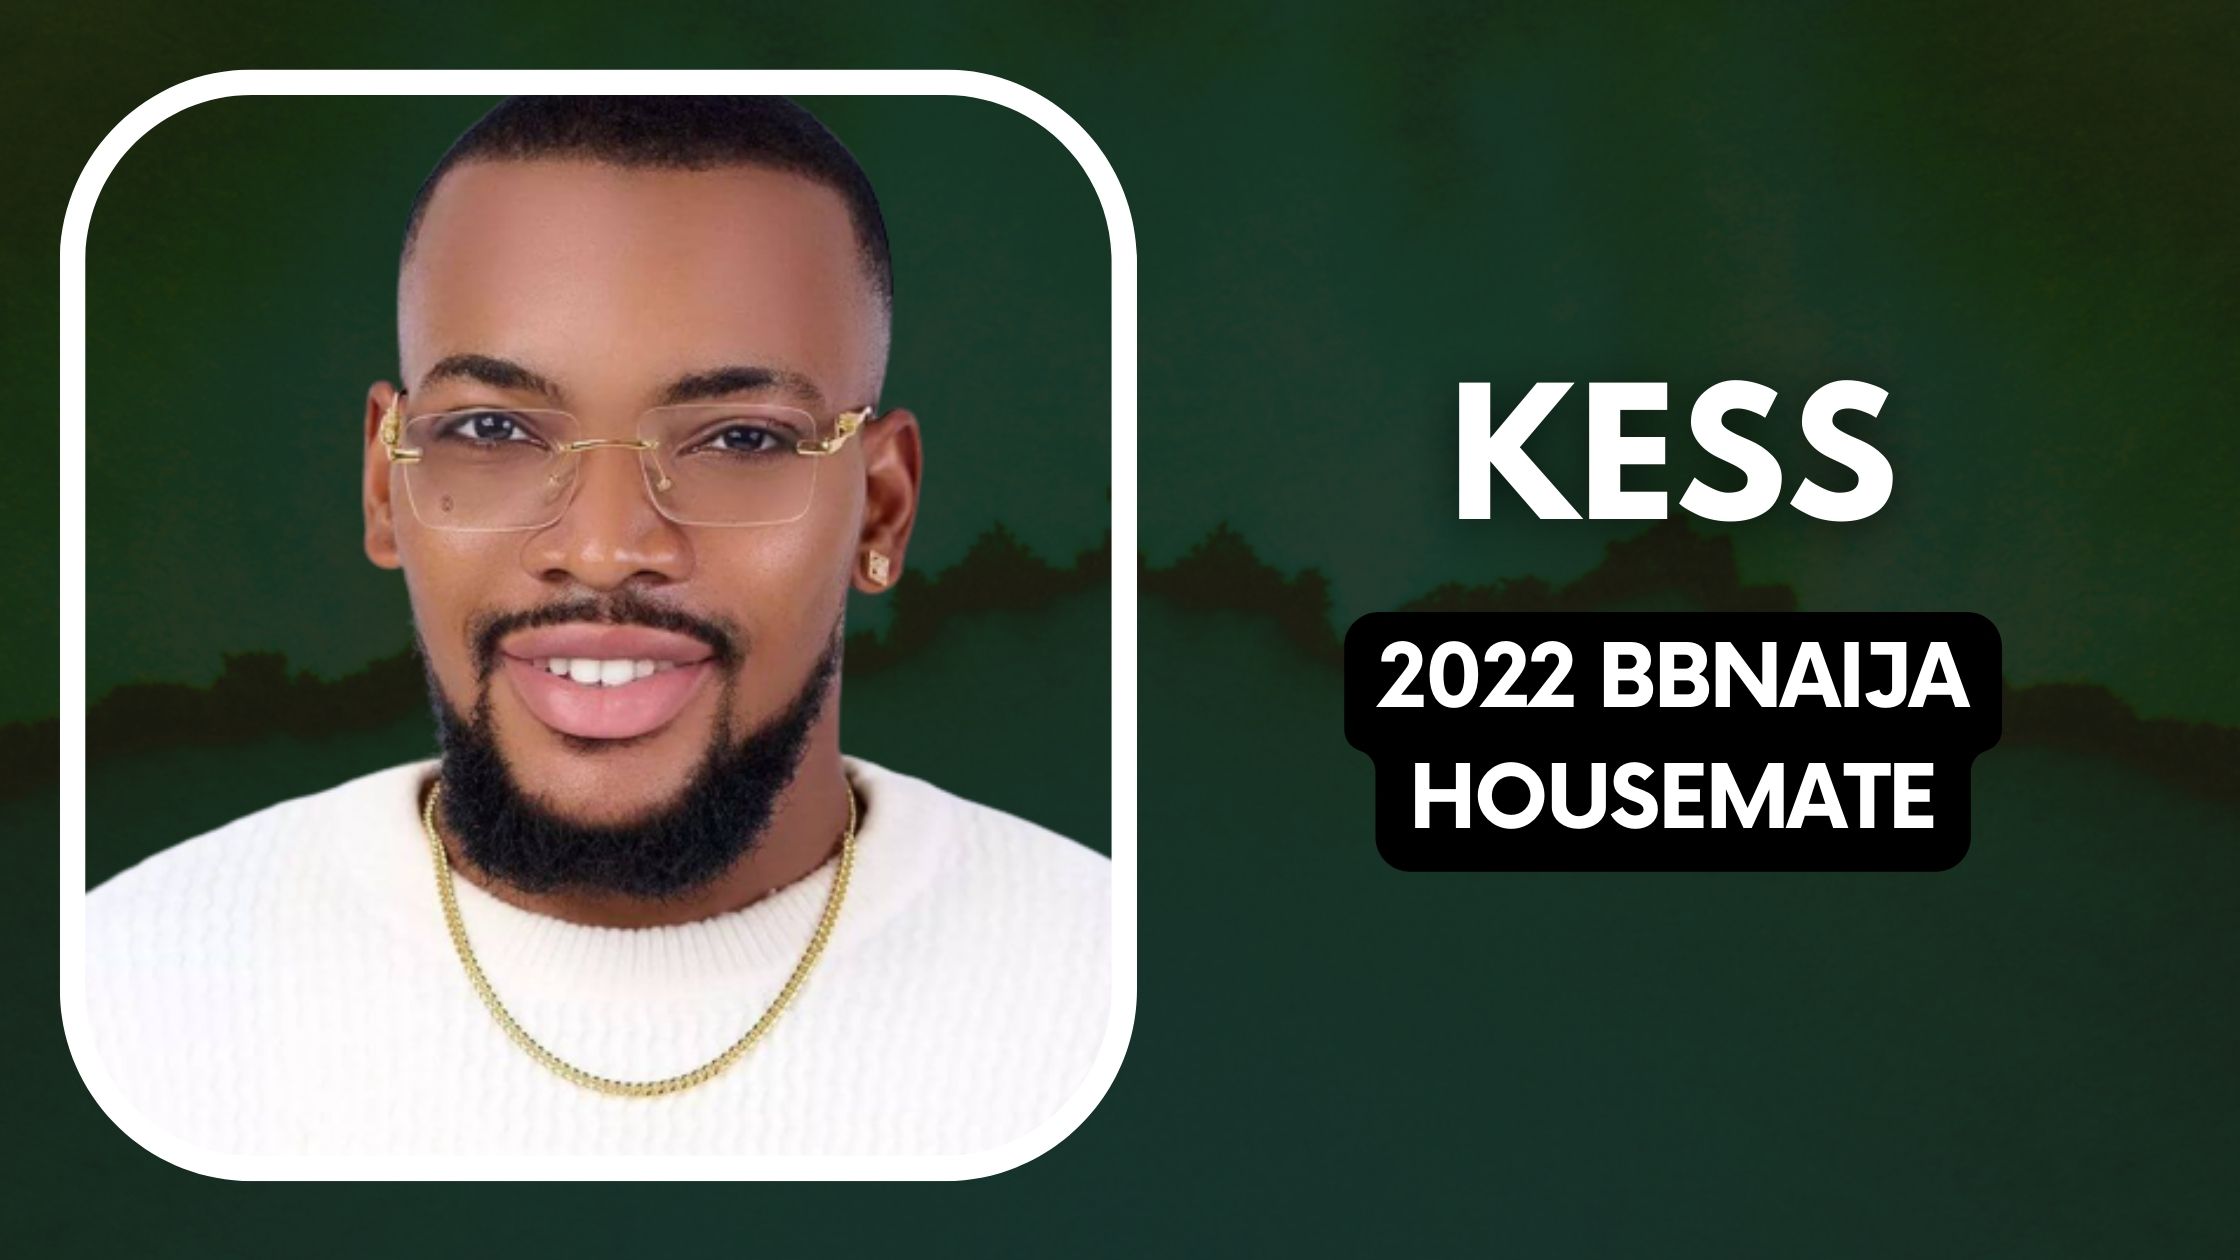 Meet Kess, 2022 BBNaija Housemate